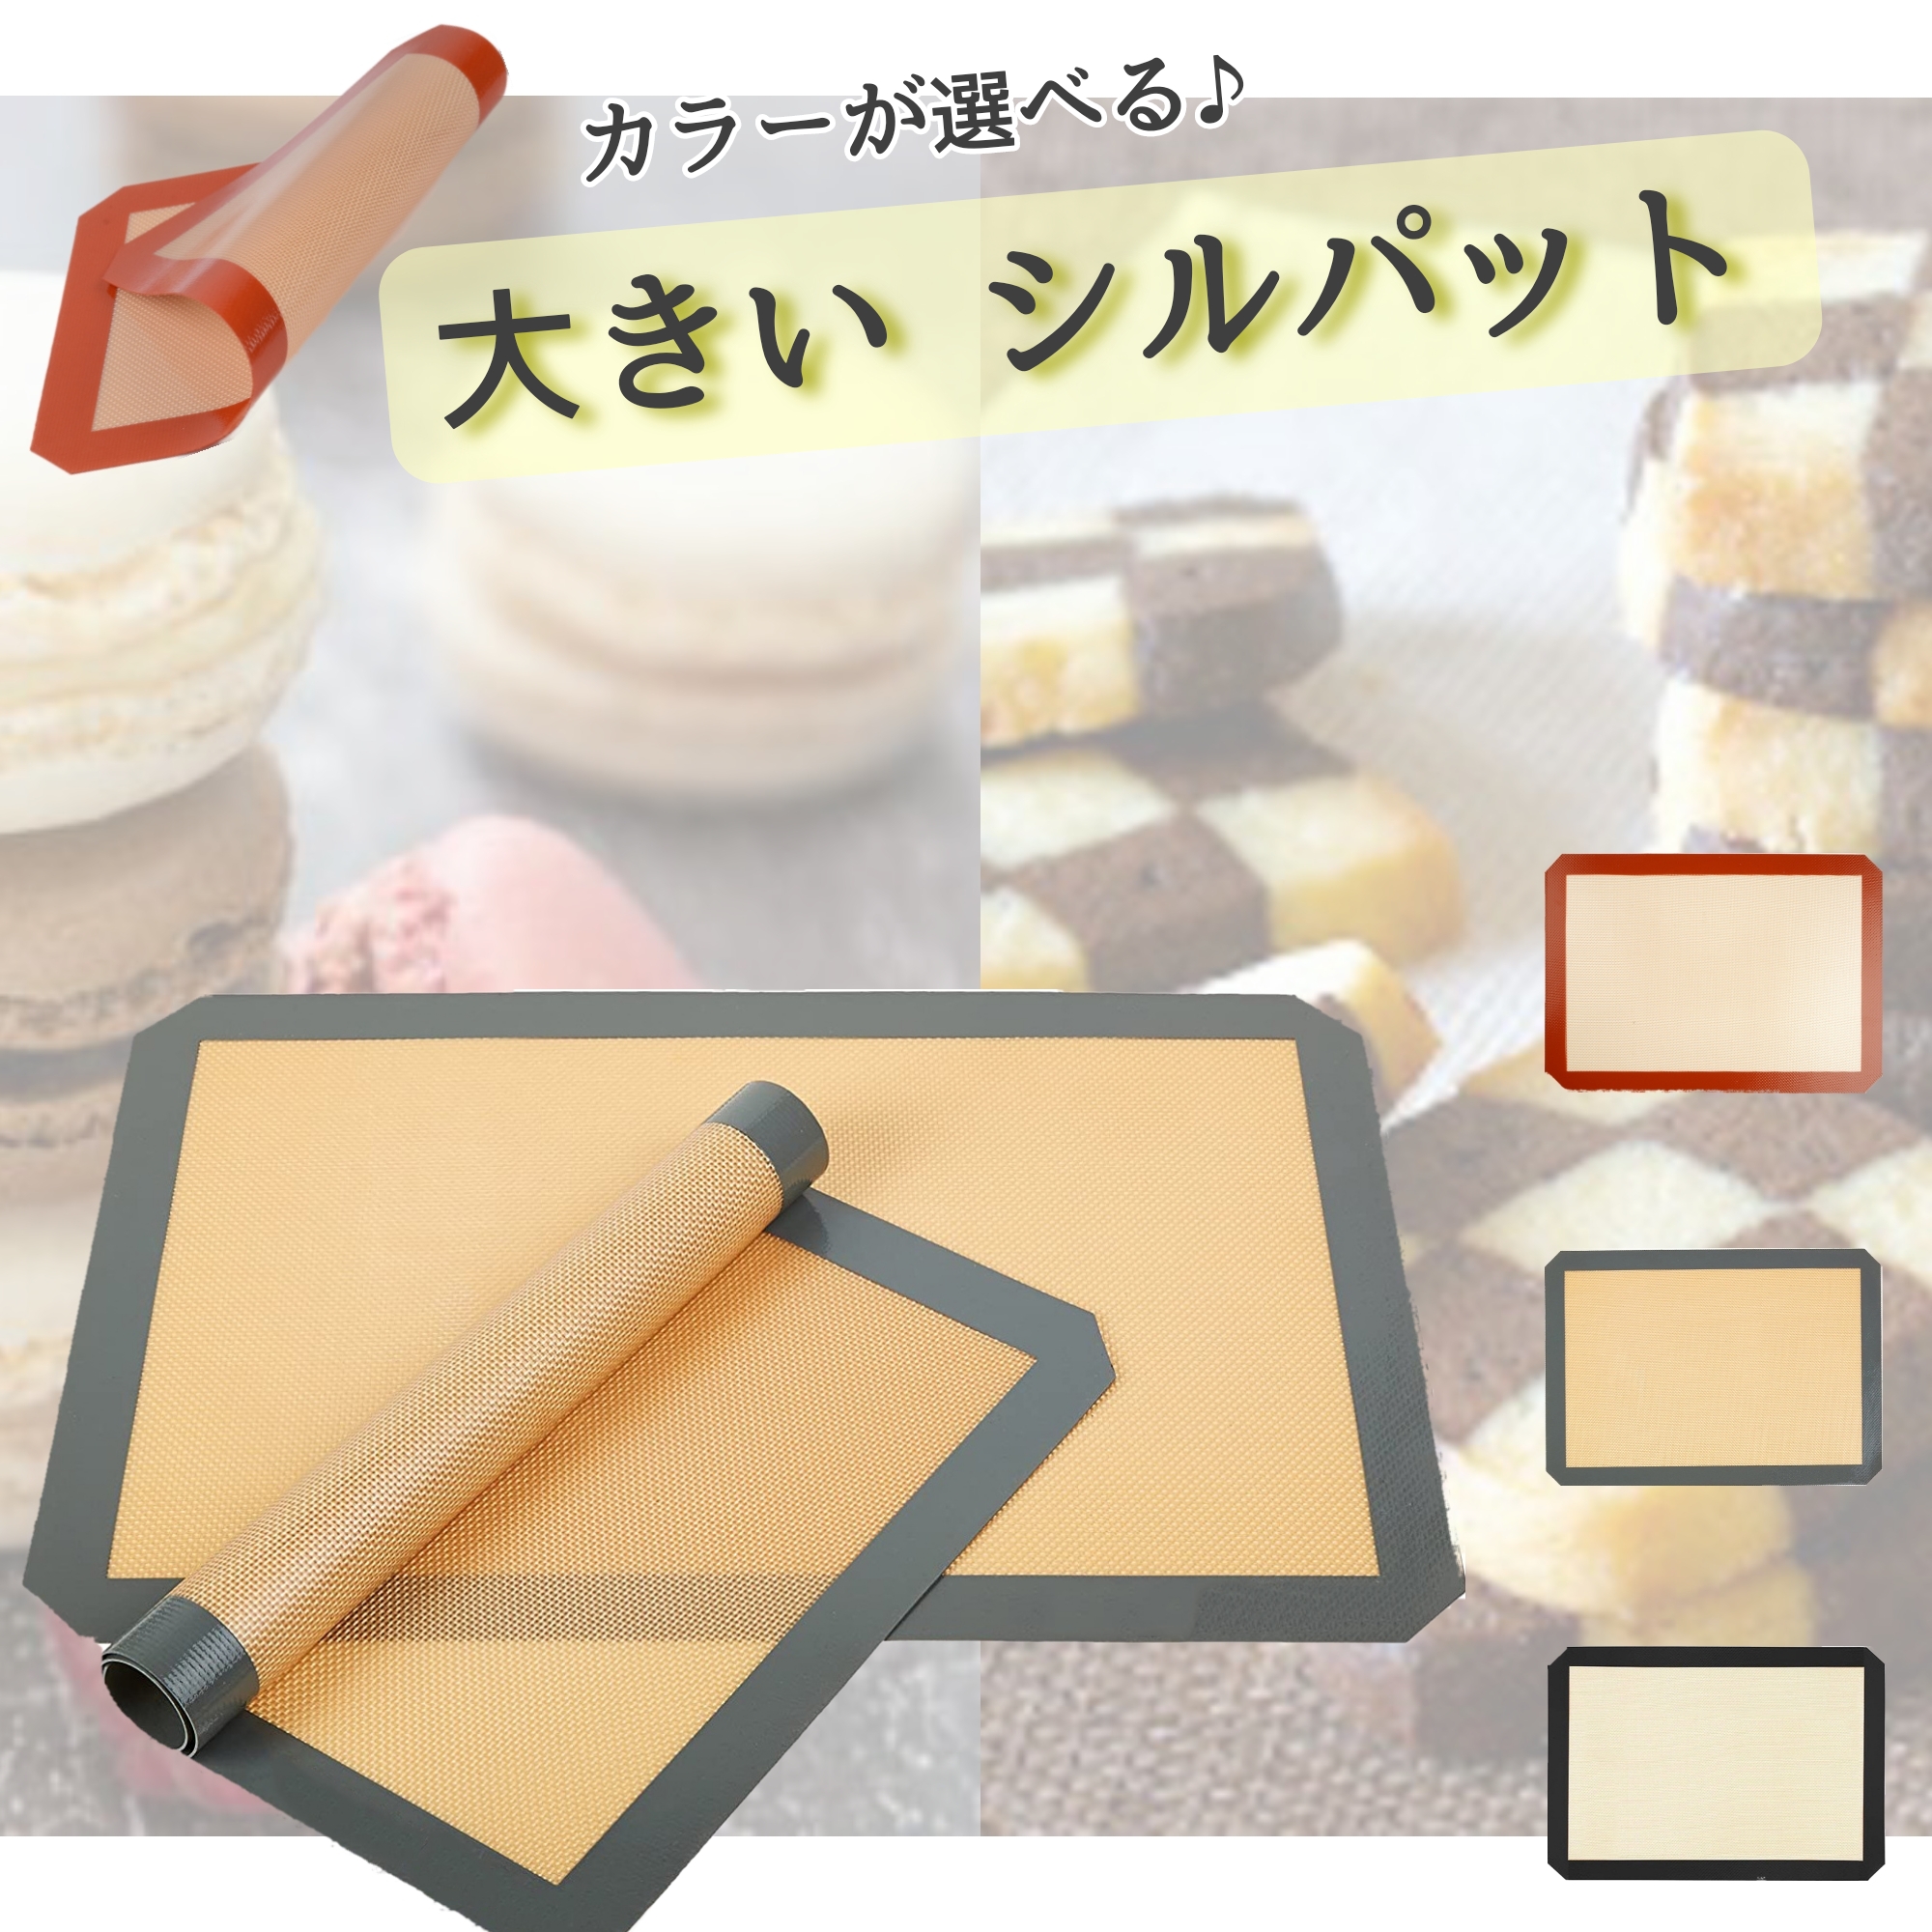 シリコン ベーキング マット クッキング パン シート お菓子 道具 器具 食器